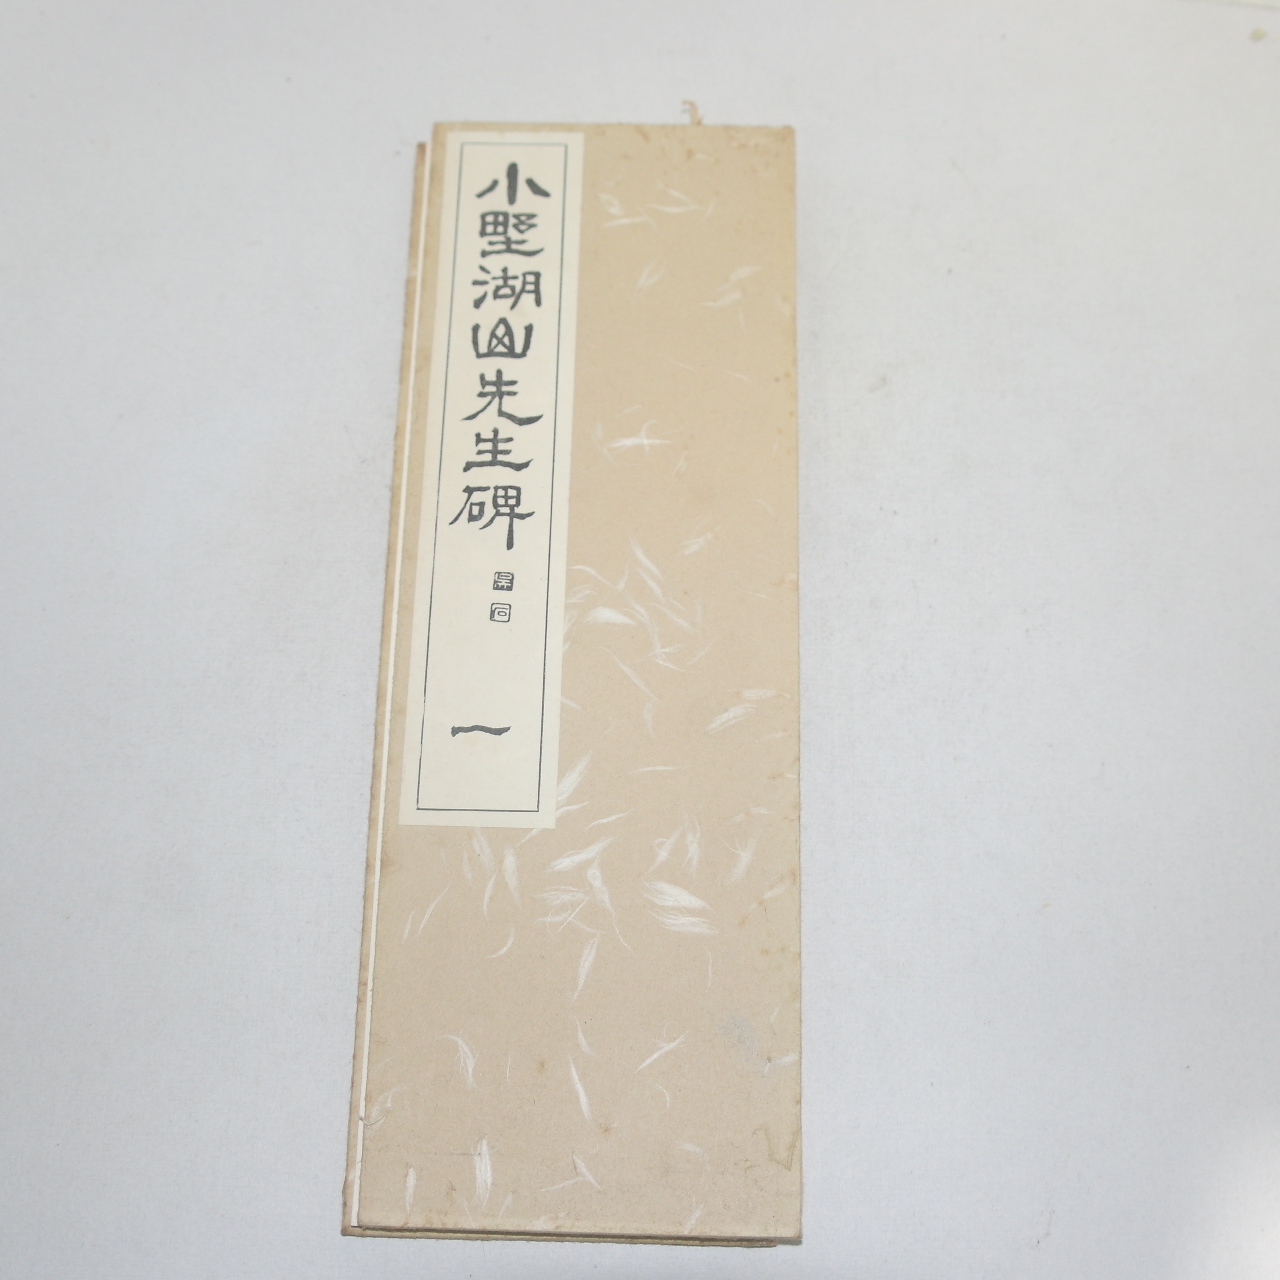 1967년(소화42년) 일본간행 절첩본 소야호산선생비(小野湖山先生碑)